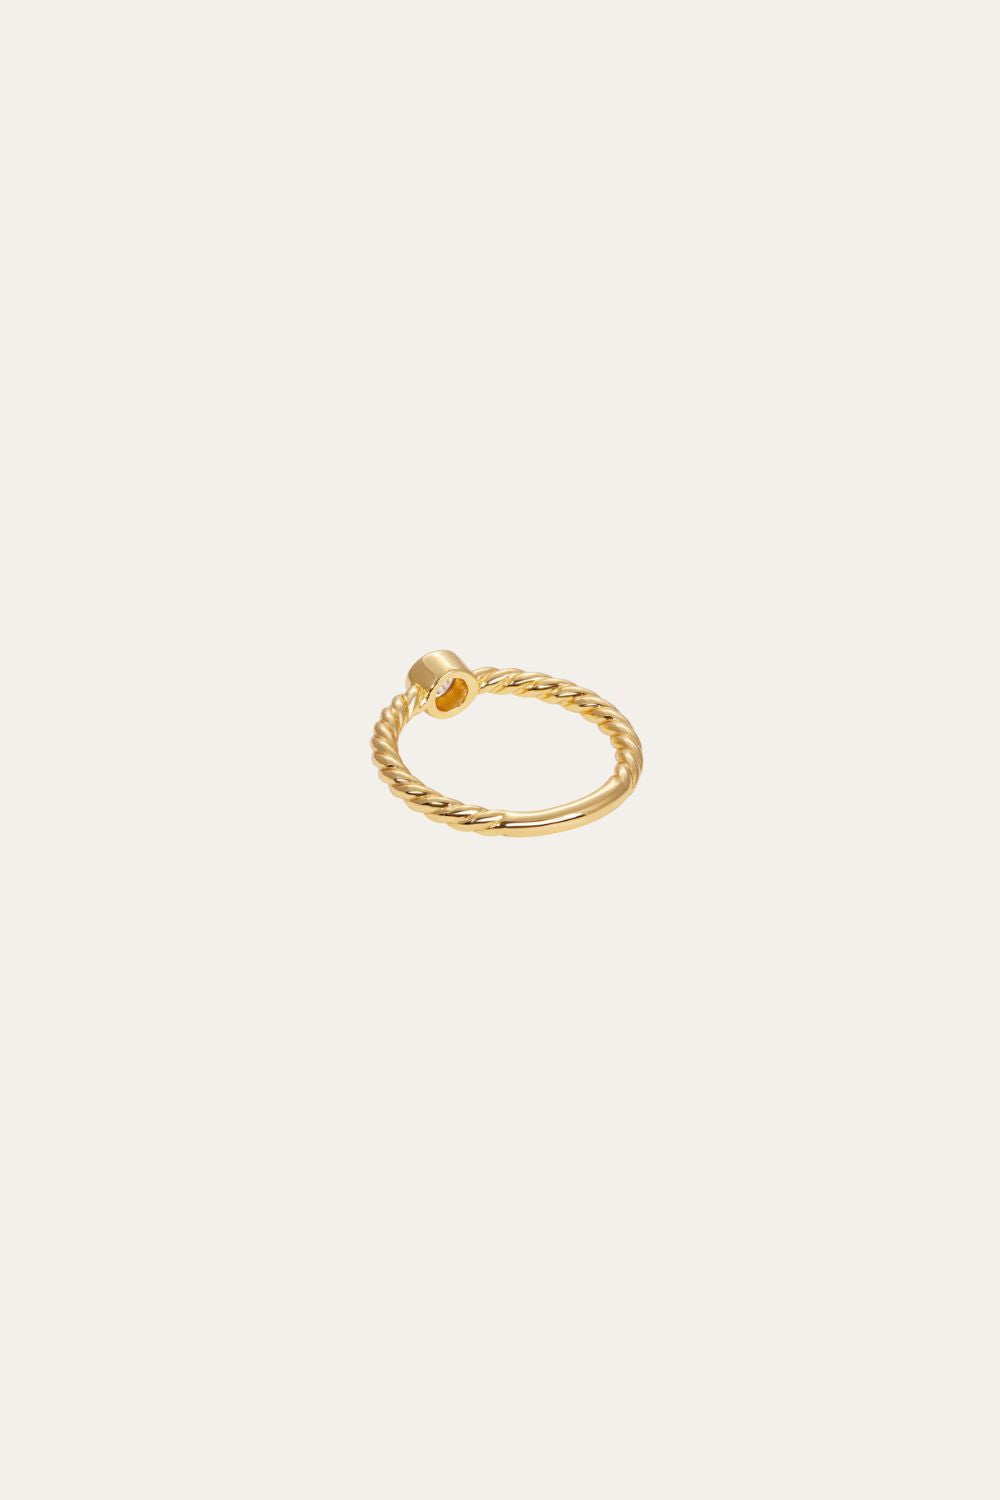 Speira round cz gold vermeil ring